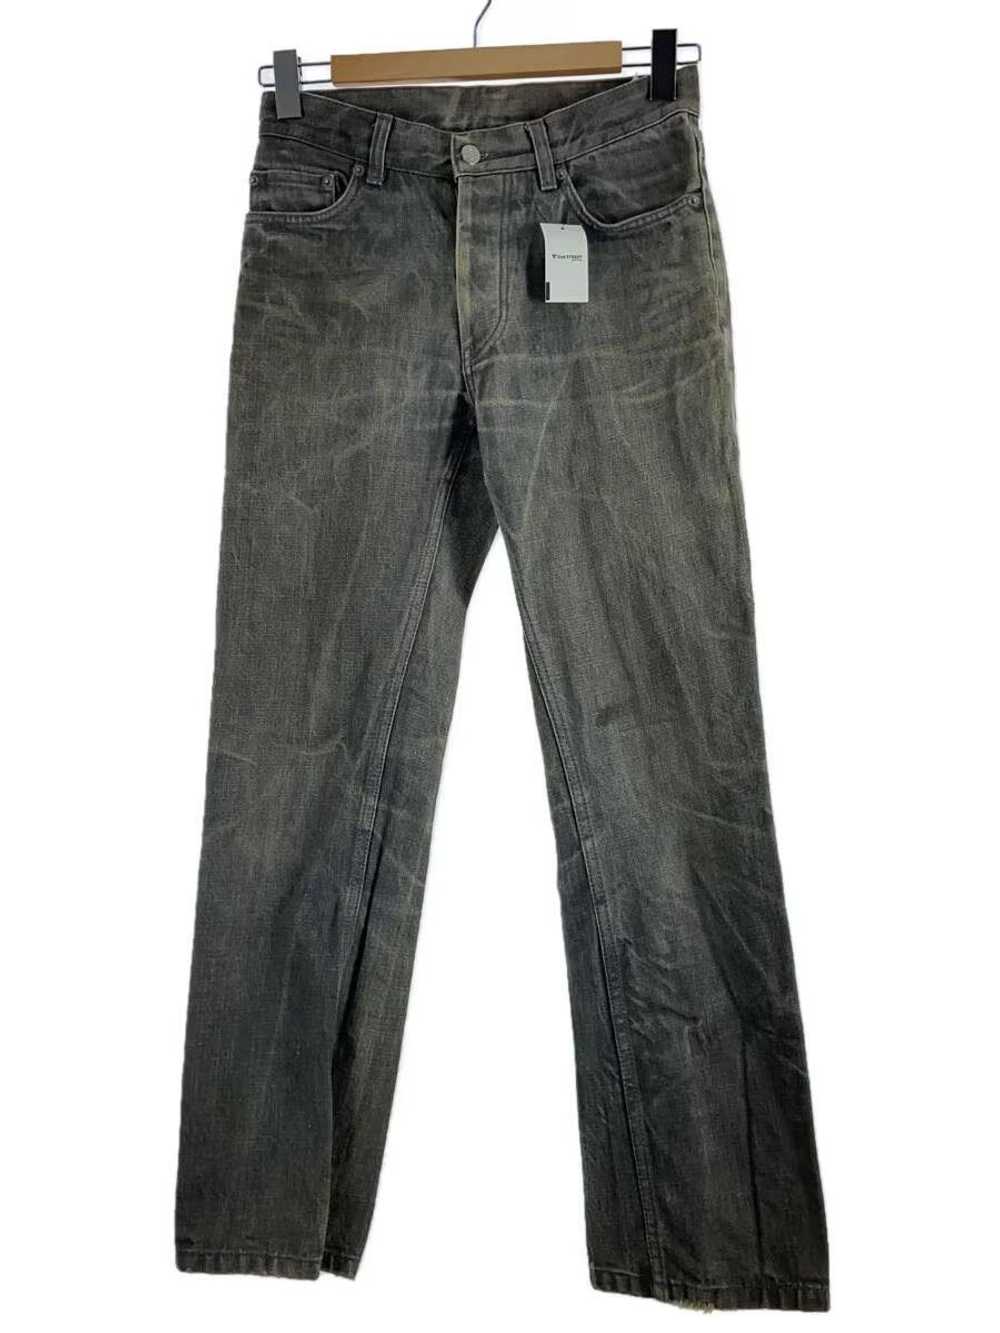 Helmut Lang 1990s Straight Leg Denim Jeans - image 1